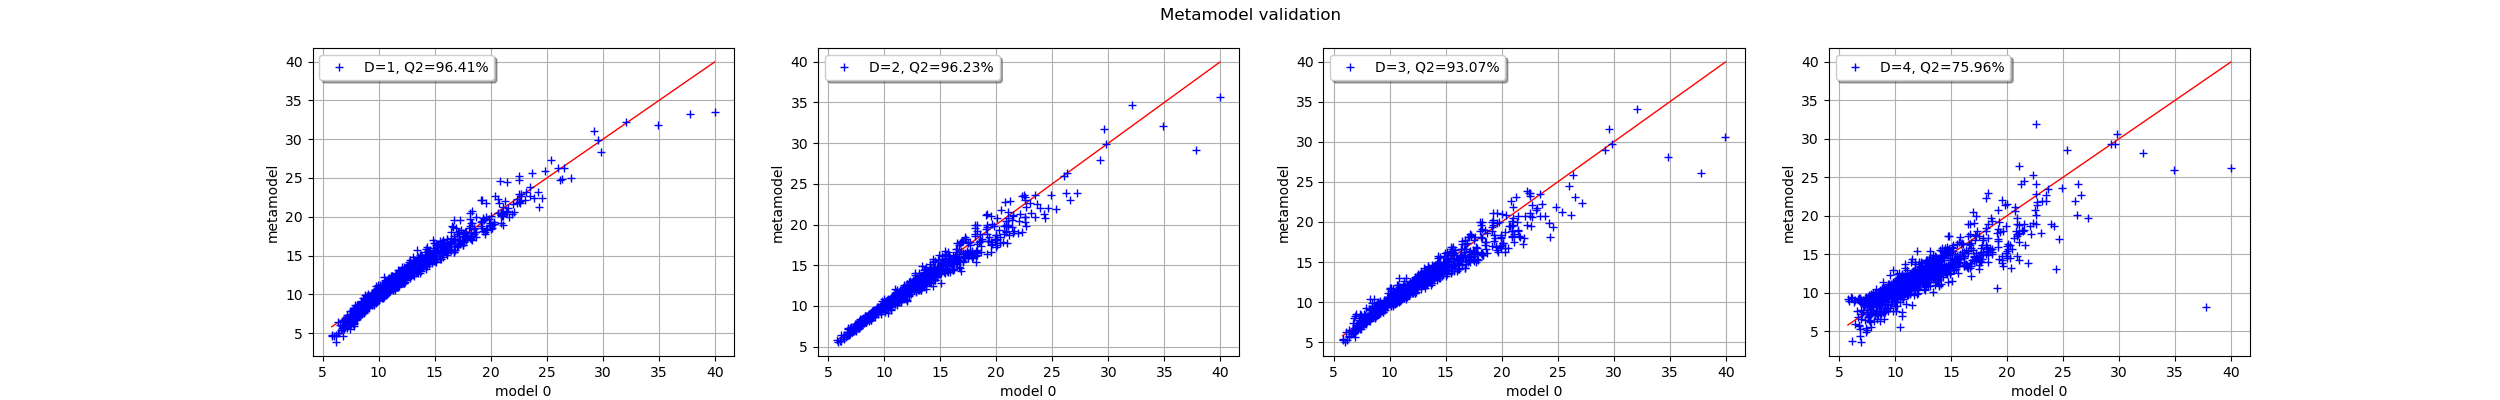 Metamodel validation